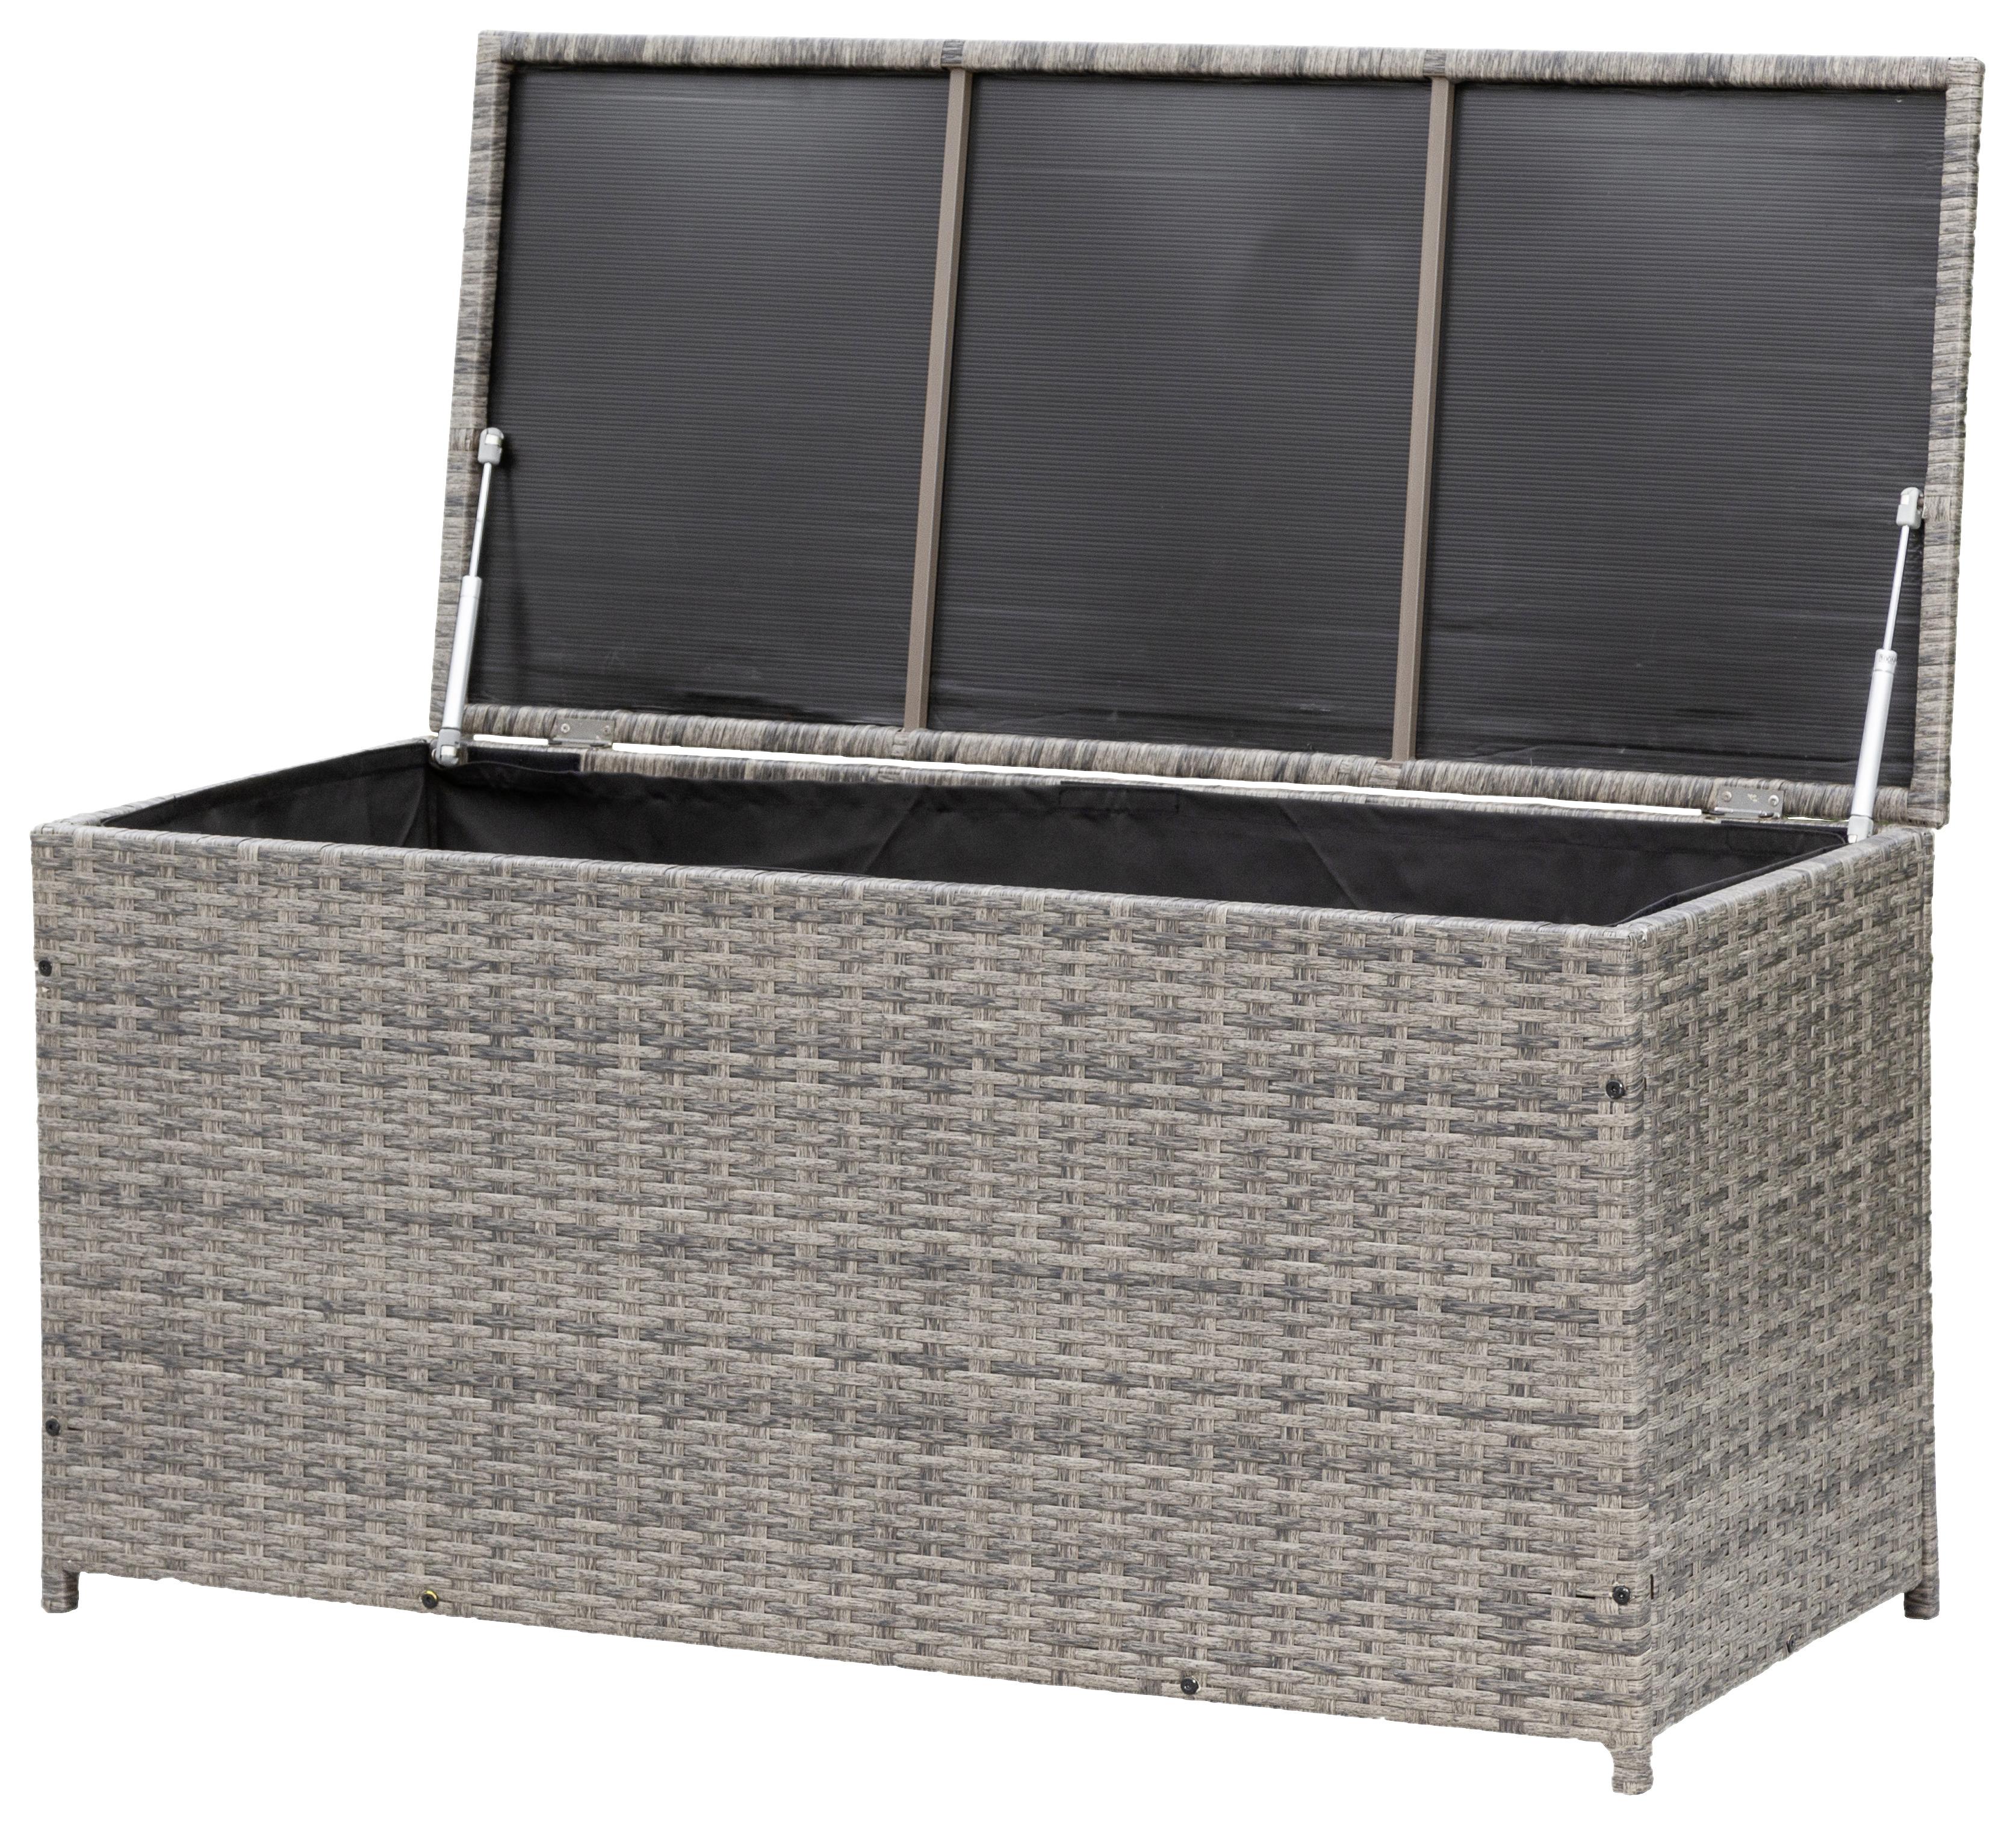 Kissenbox mit Aufklappbarem Deckel BxHxT: 123/54/60 cm - Grau, KONVENTIONELL, Kunststoff/Metall (123/54/60cm) - Ambia Garden